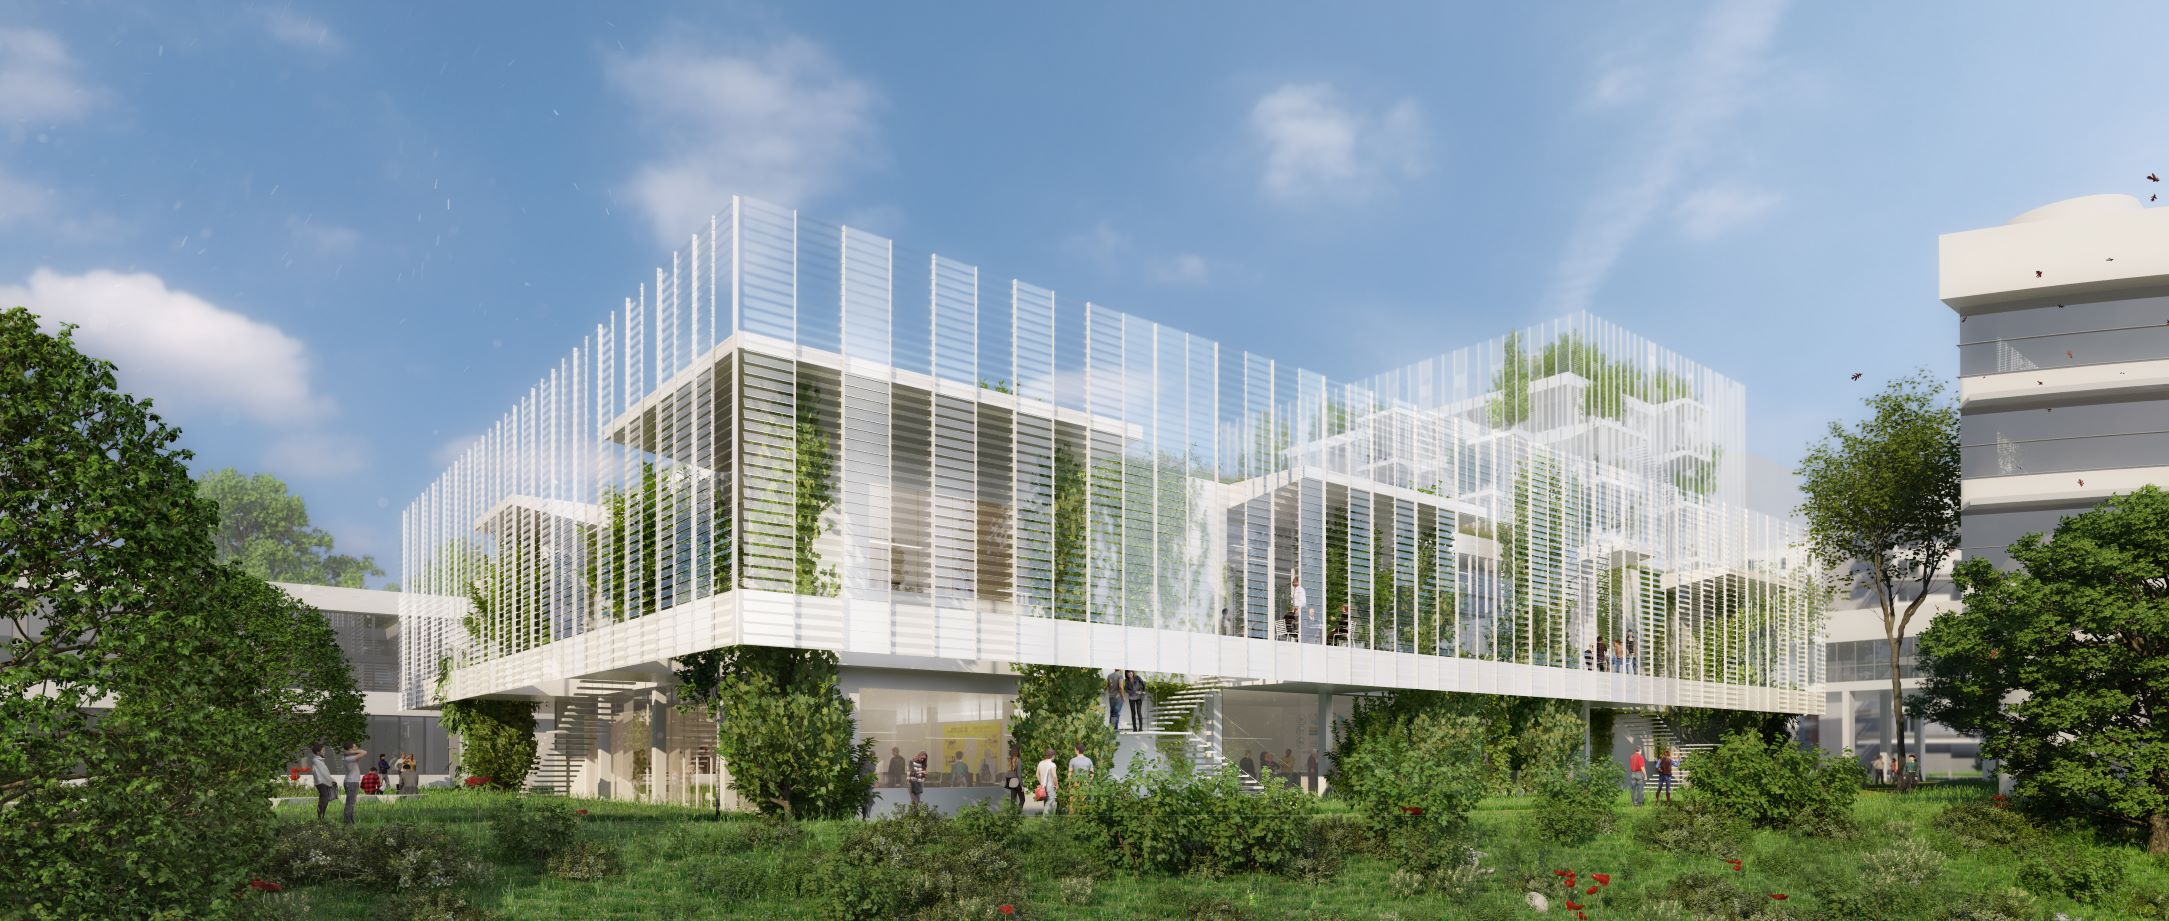 Campus Essec 2020 à Cergy-Pontoise : le creative learning center